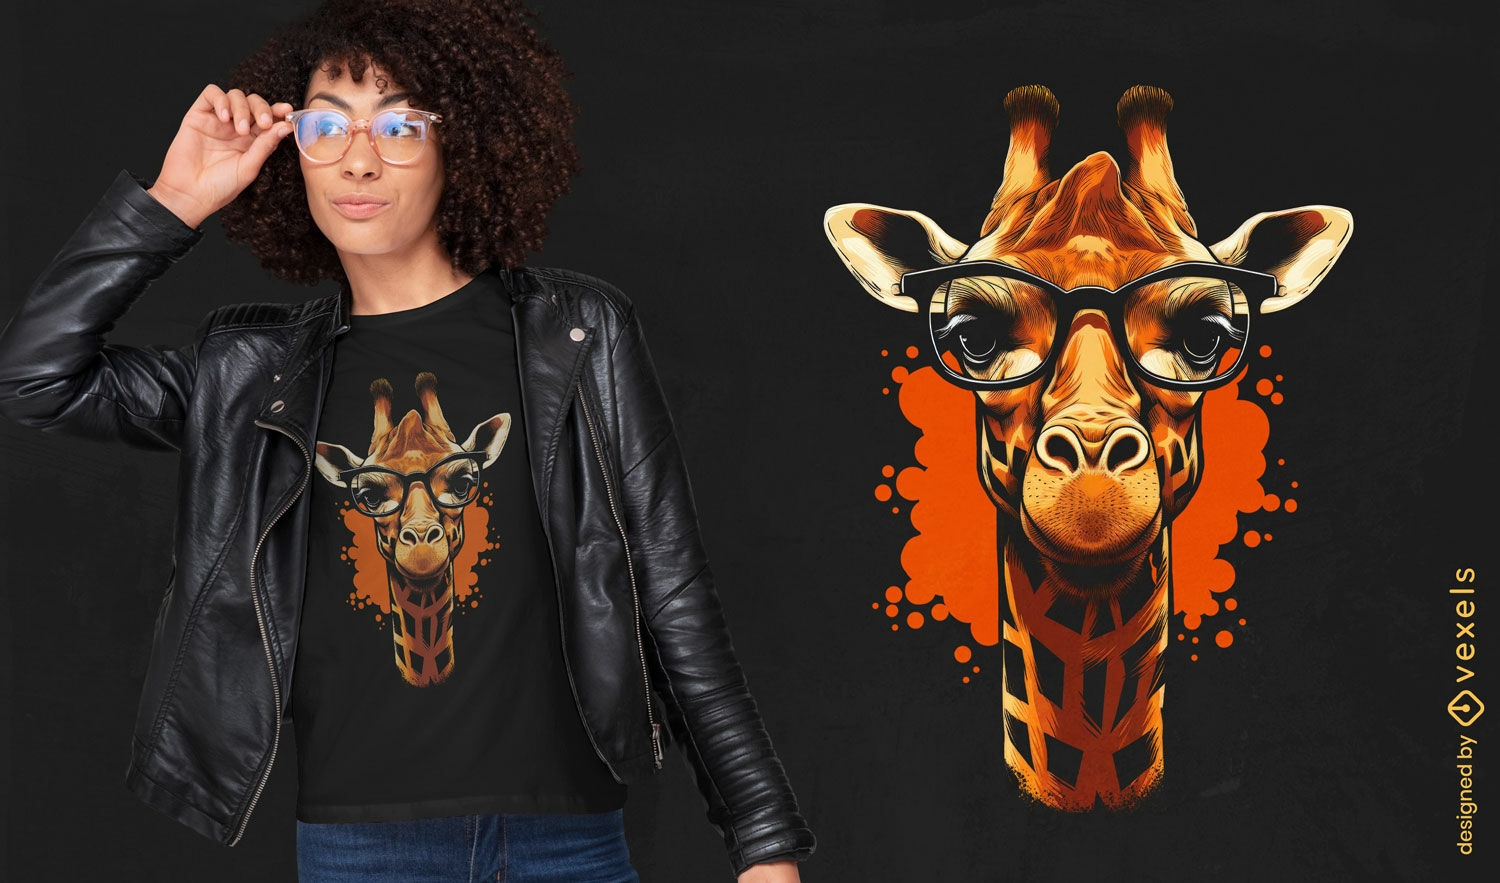 Giraffe portrait t-shirt design